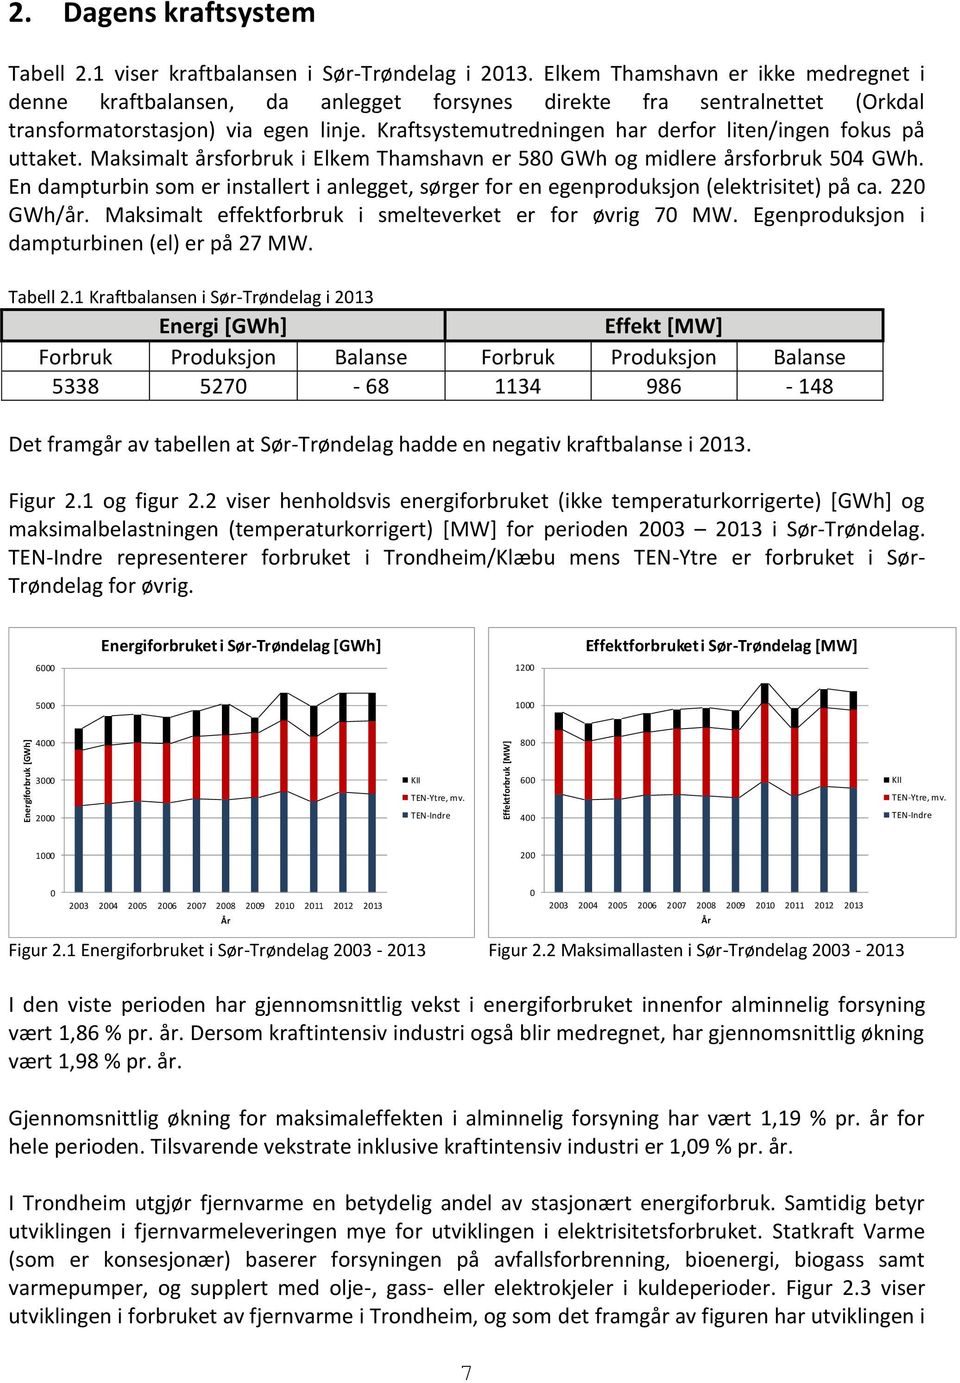 Kraftsystemutredningen har derfor liten/ingen fokus på uttaket. Maksimalt årsforbruk i Elkem Thamshavn er 580 GWh og midlere årsforbruk 504 GWh.